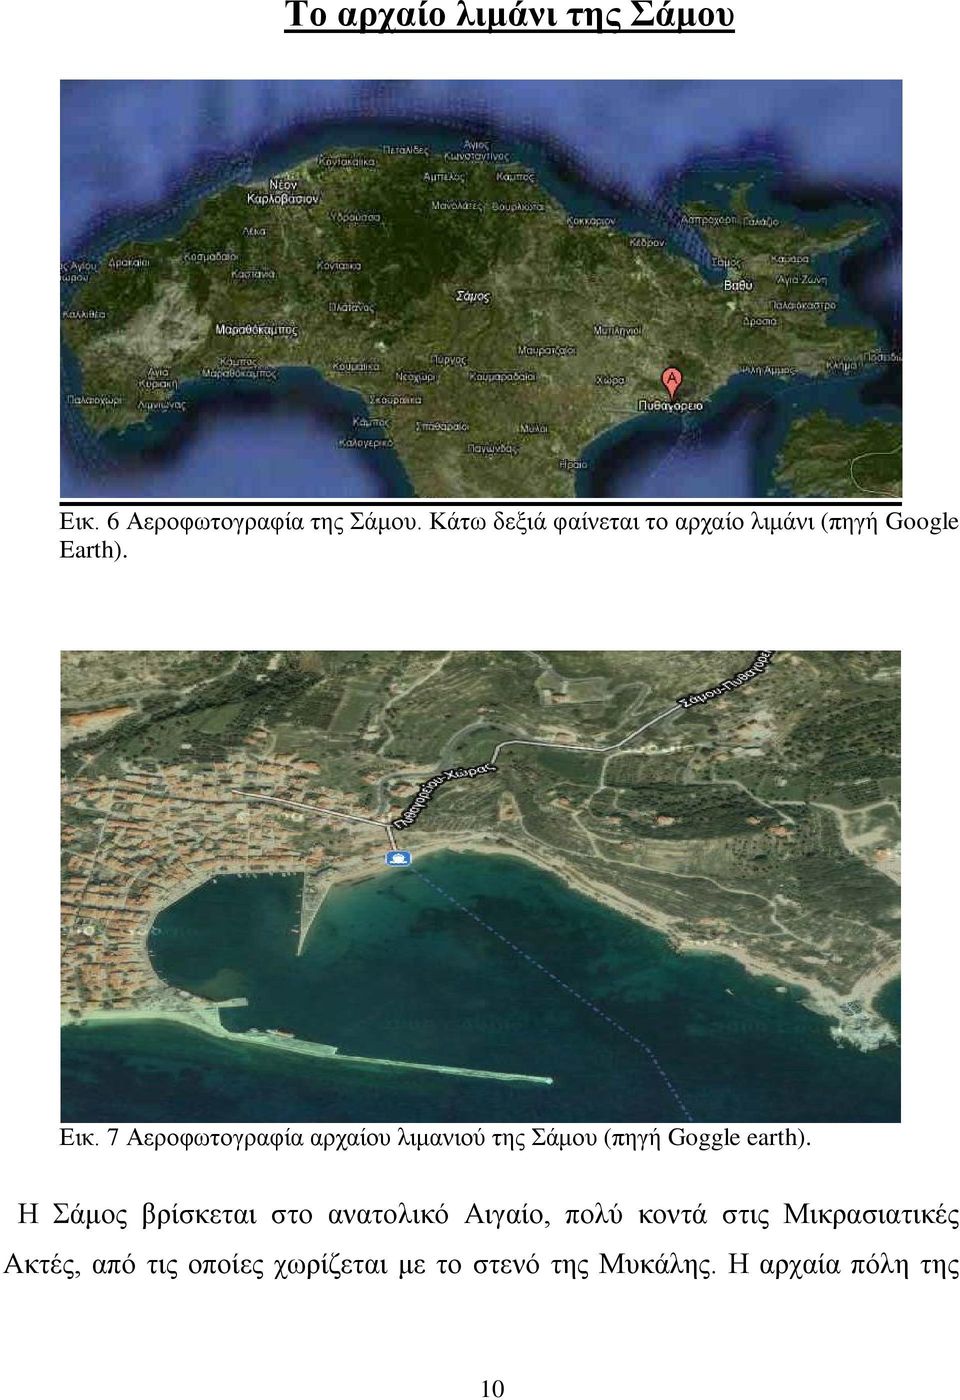 7 Αεροφωτογραφία αρχαίου λιμανιού της Σάμου (πηγή Goggle earth).